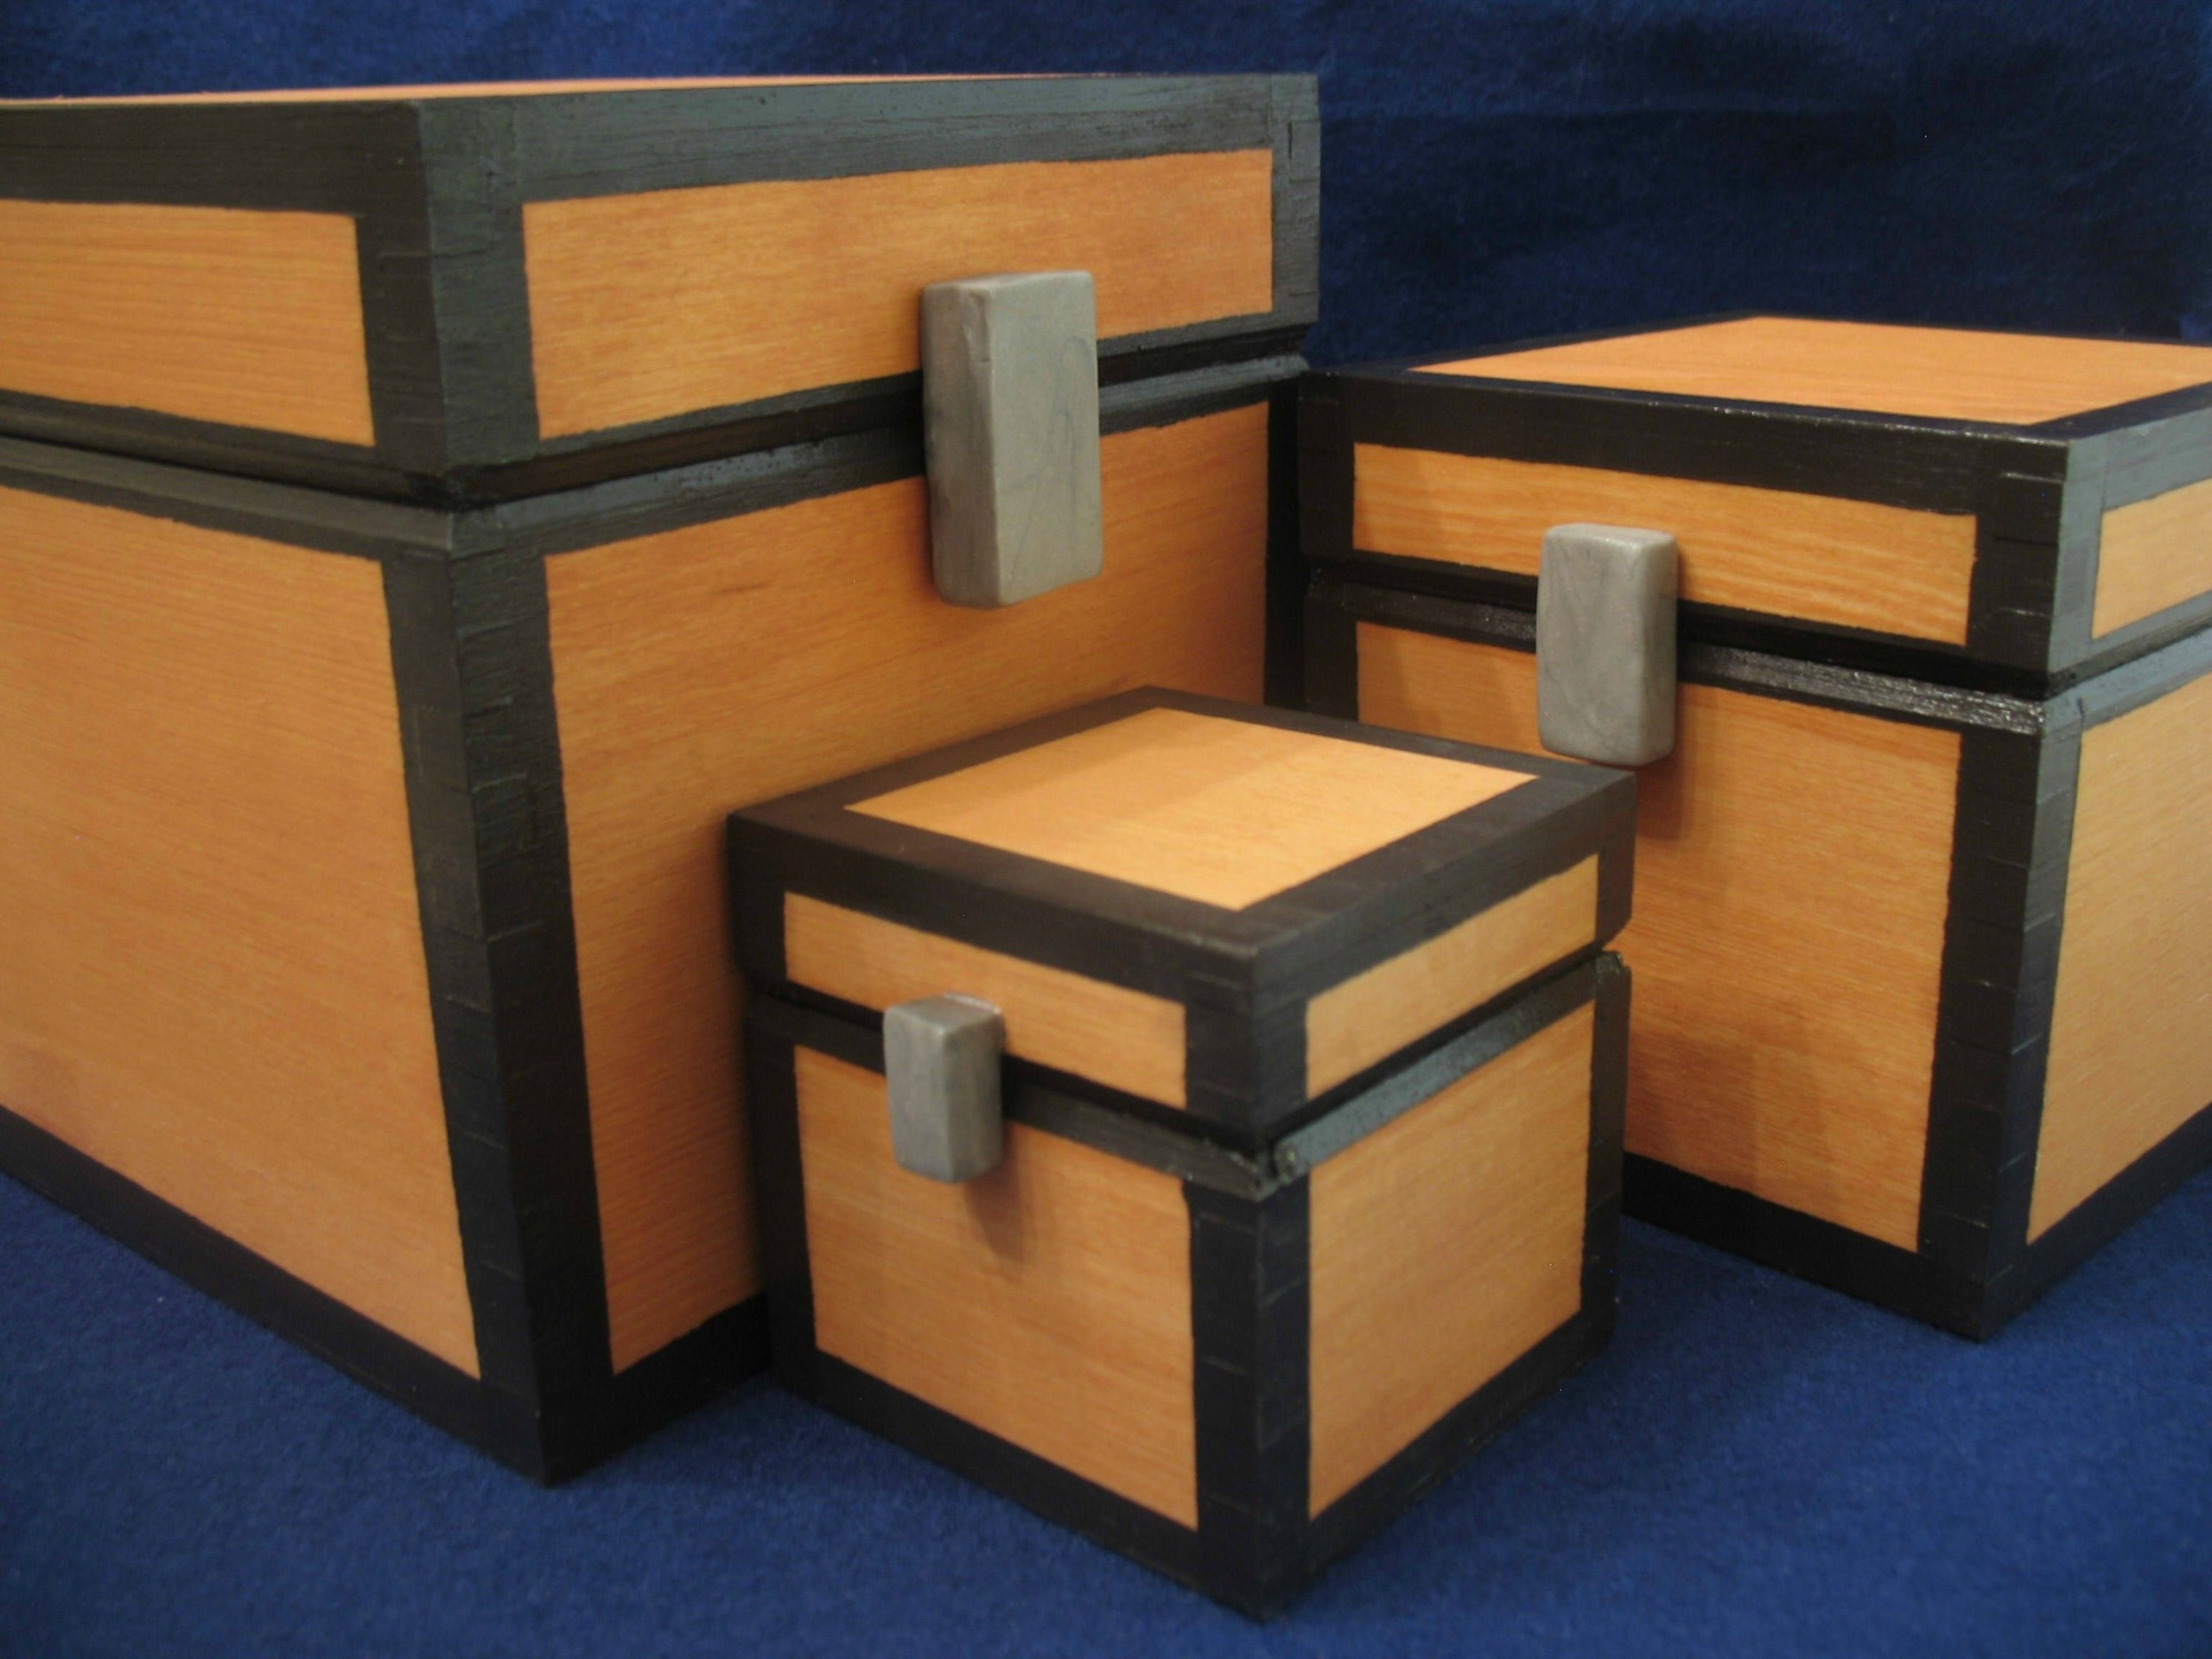 Minecraft inspired chest working wooden